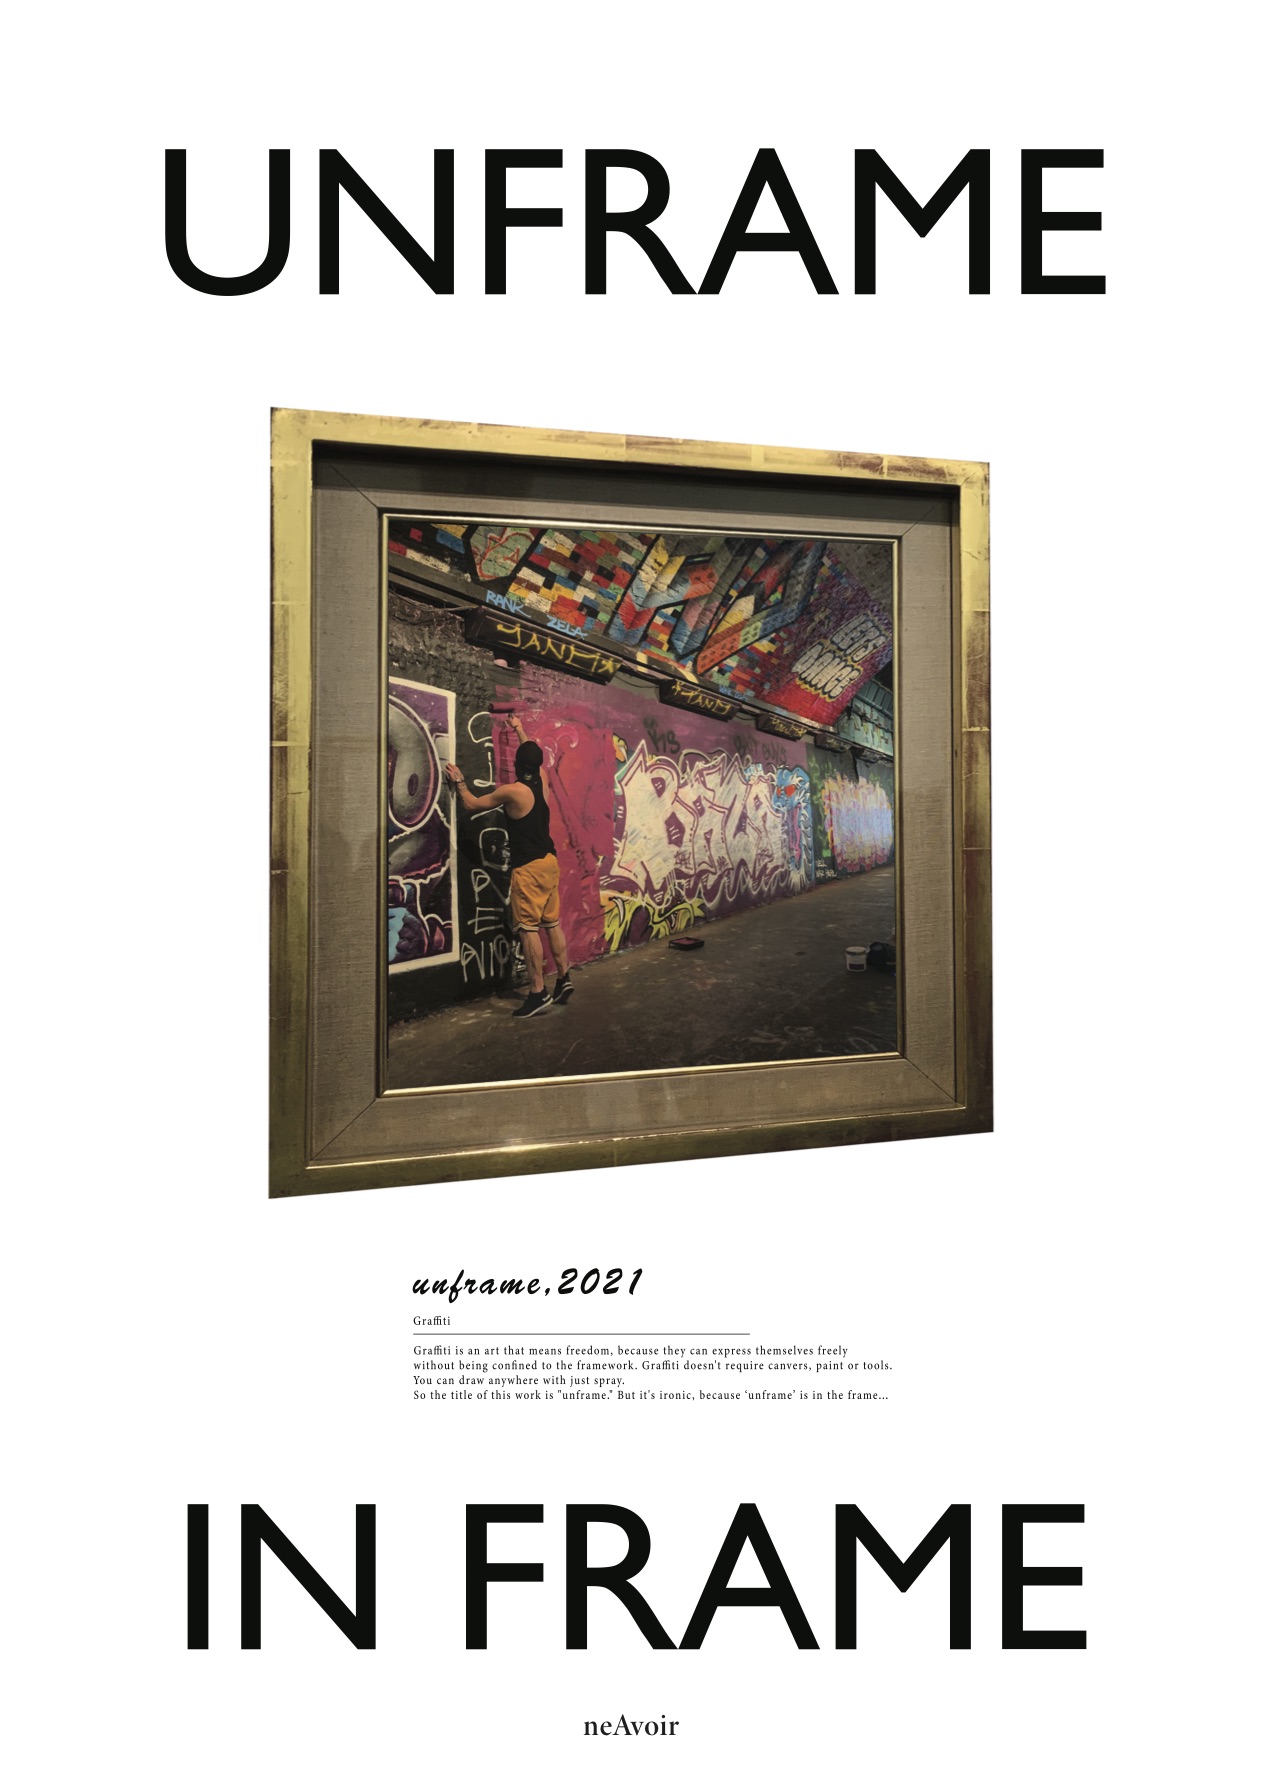 Unframe in frame poster